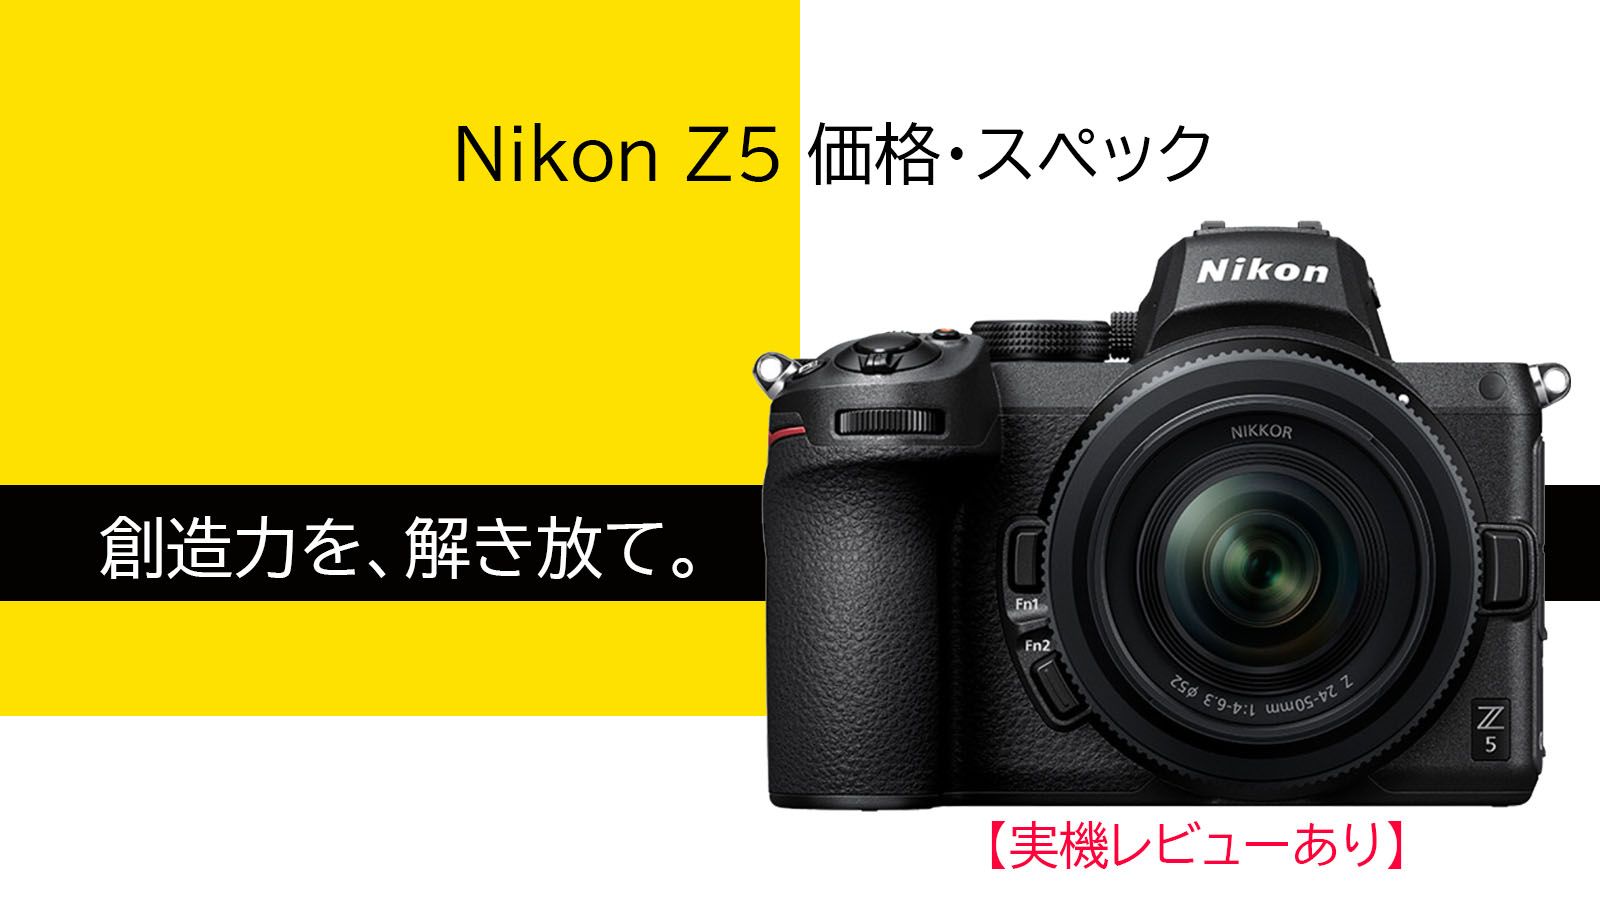 Nikonミラーレス】Z5の気になるスペックと価格をまとめてみた【実機レビューあり】 menokumaBlog